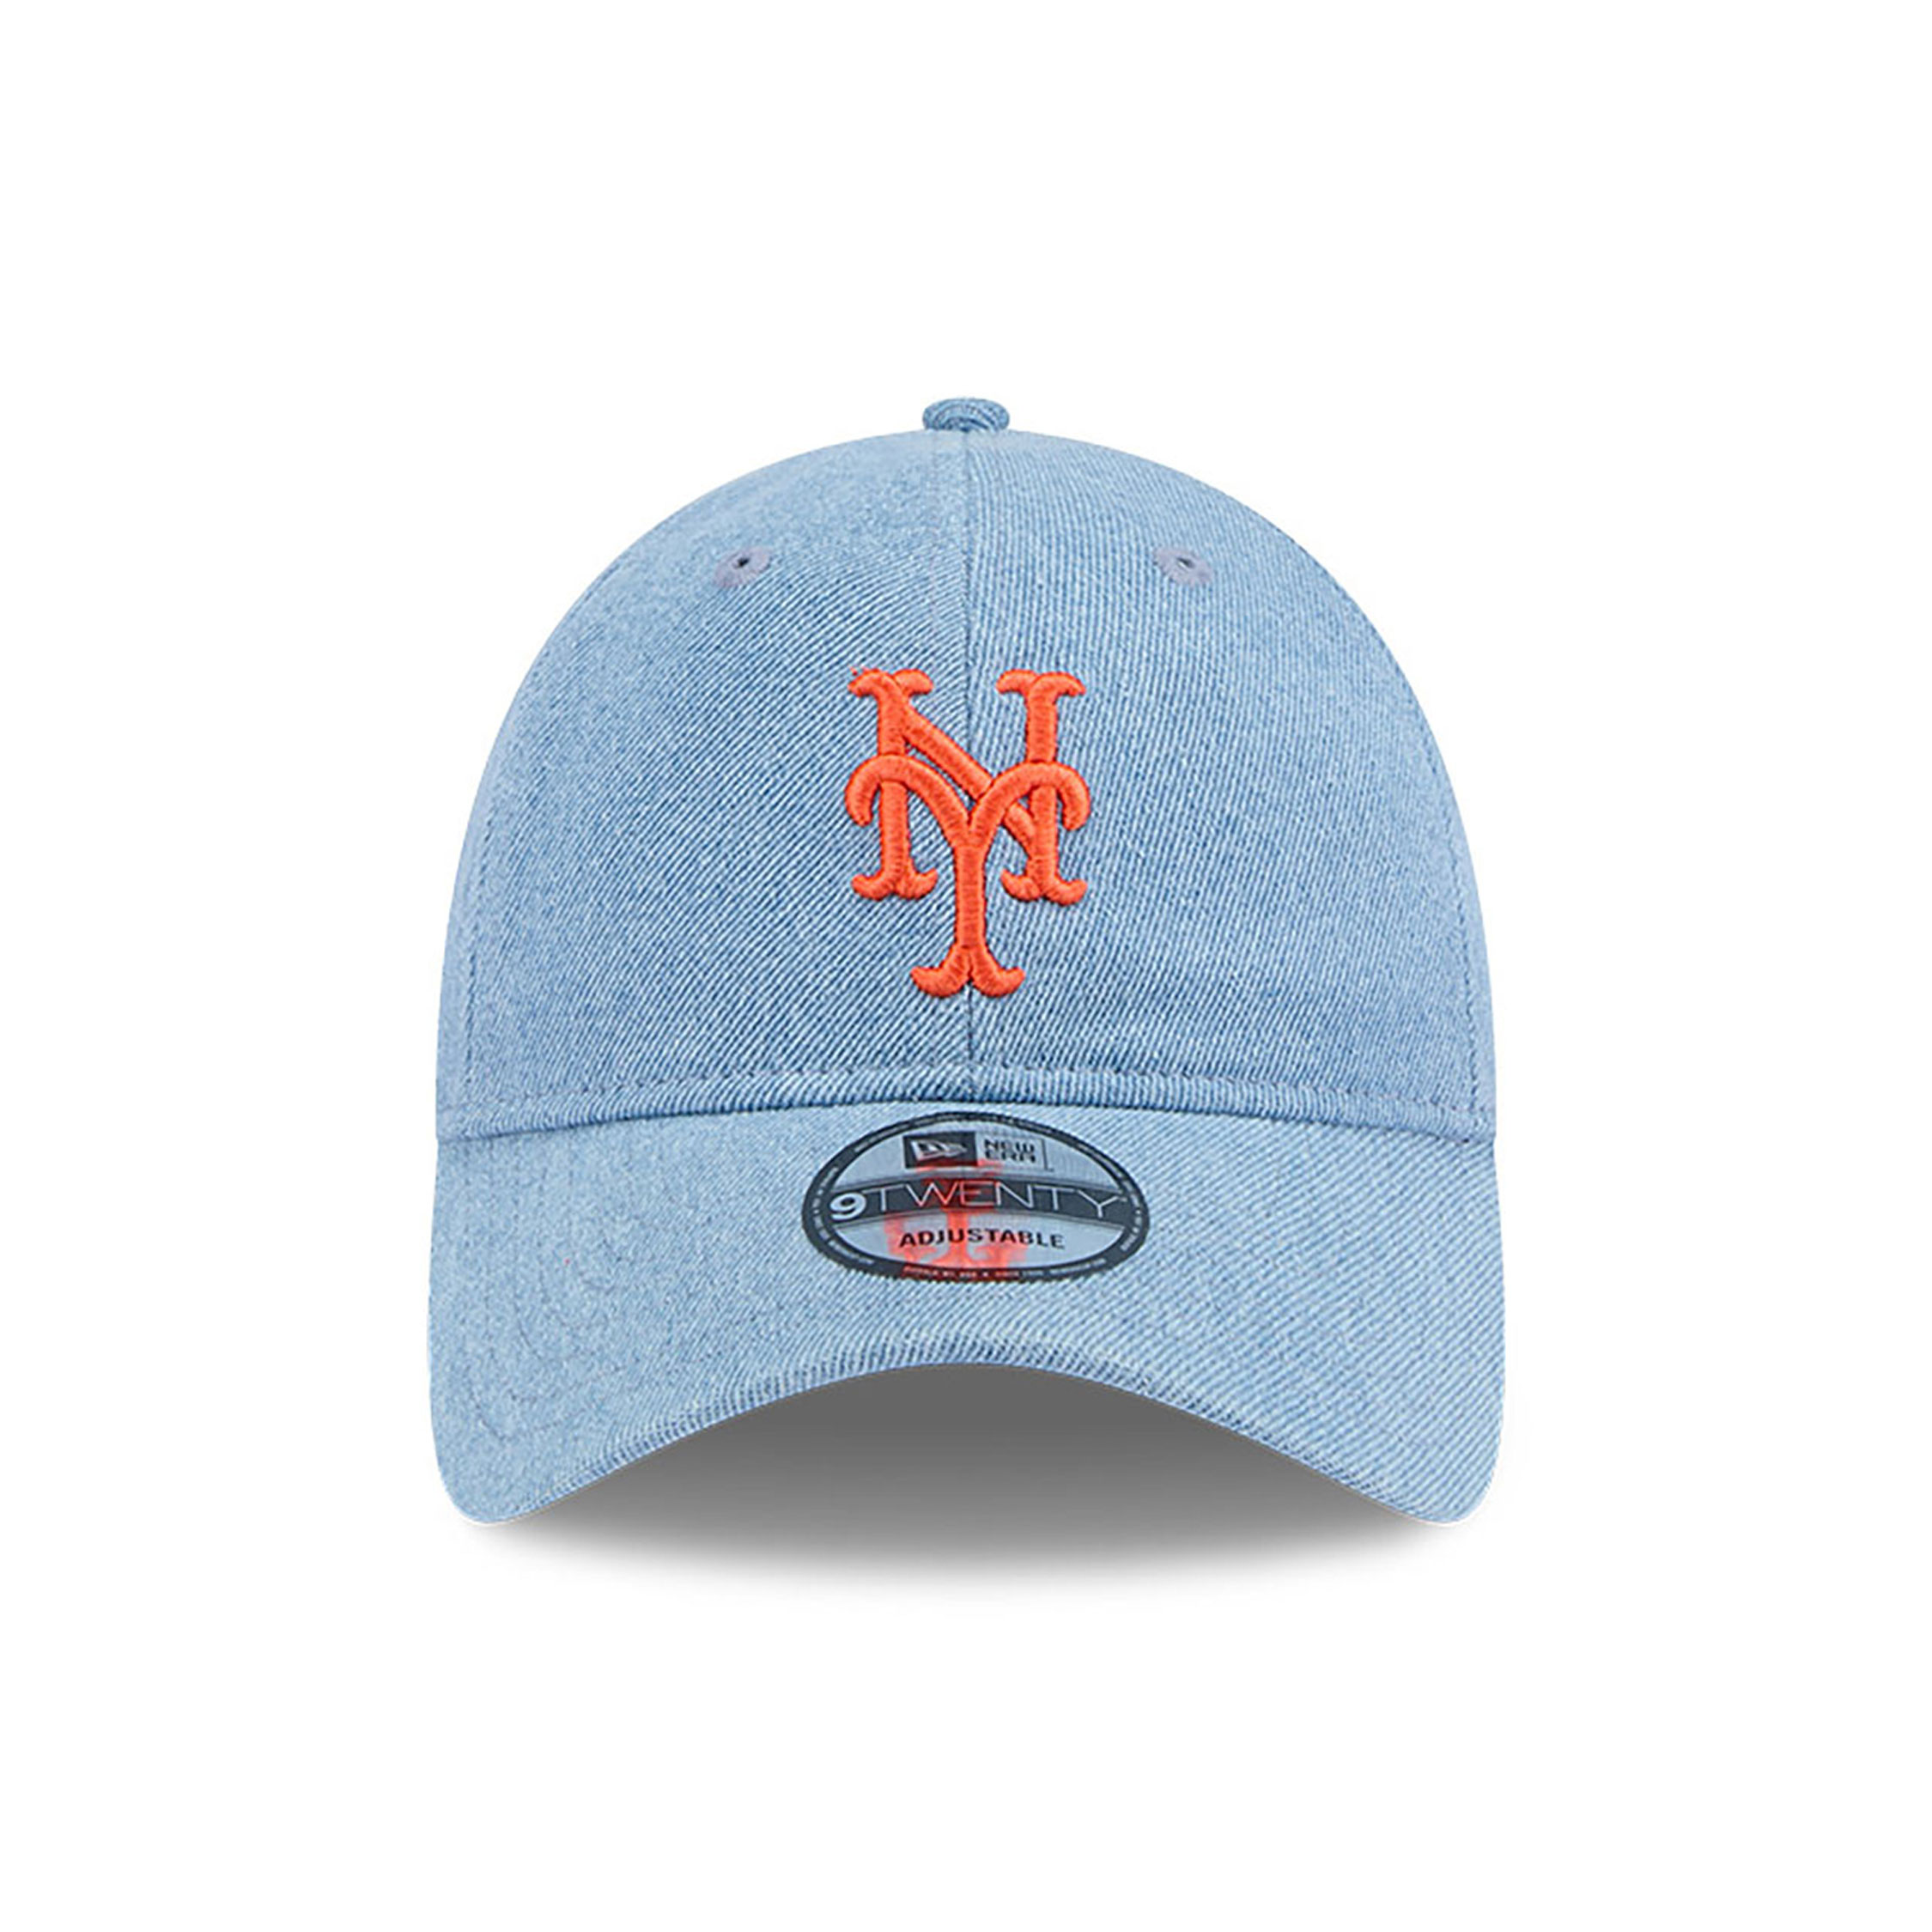 New York Mets Washed Denim Light Blue 9TWENTY Adjustable Cap